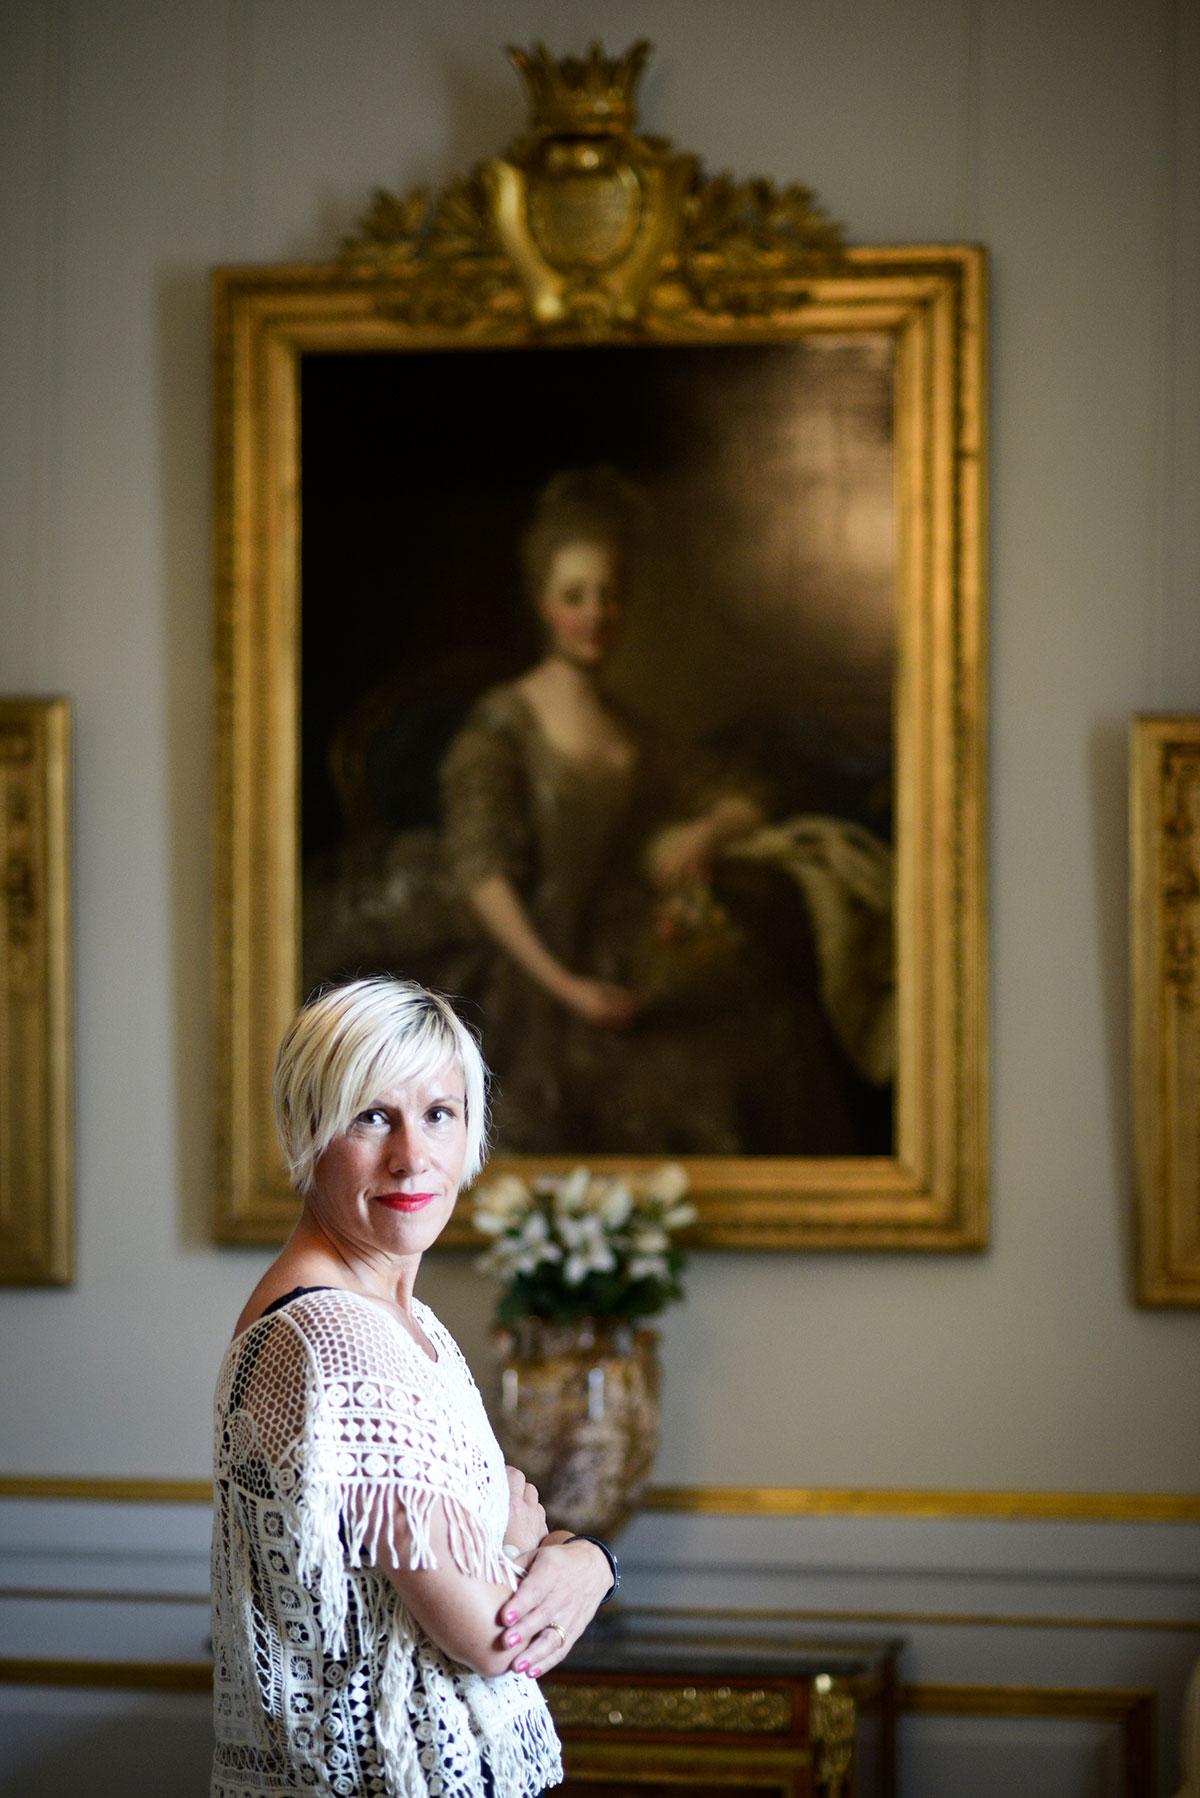 Inspirerades av tavla Idén till "Barnbruden" fick Anna Laestadius Larsson när hon såg tavlan av Hedvig Elisabeth Charlotta på Drottningholms slott. Den är målad 1775 av Alexander Roslin, och prinsessan bär sin brudklänning.
– Jag kände direkt att hon var historien för min bok.